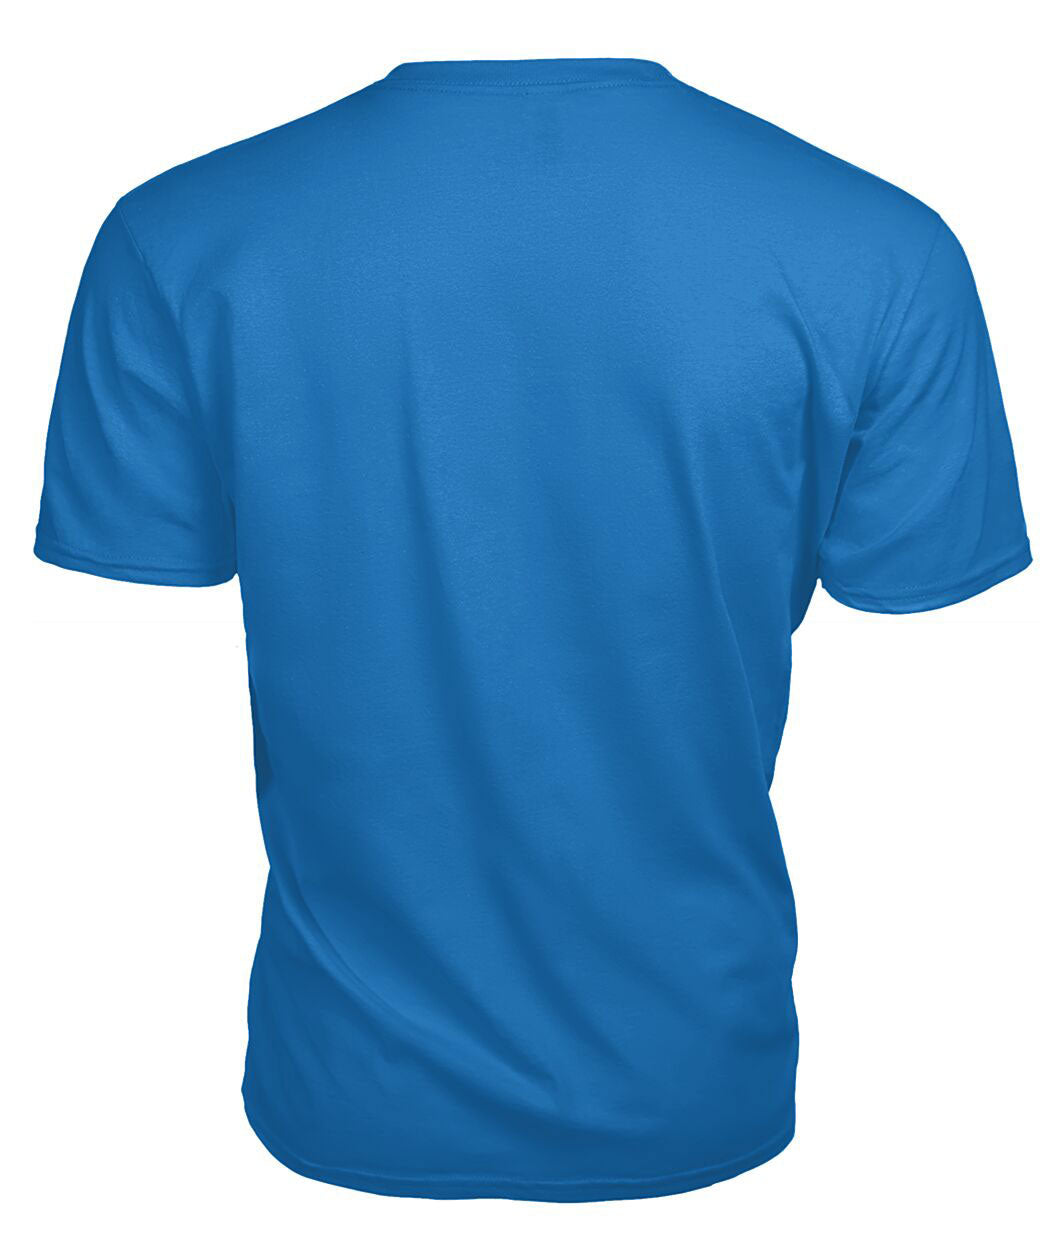 Williams Tartan Crest 2D T-shirt - Blood Runs Through My Veins Style